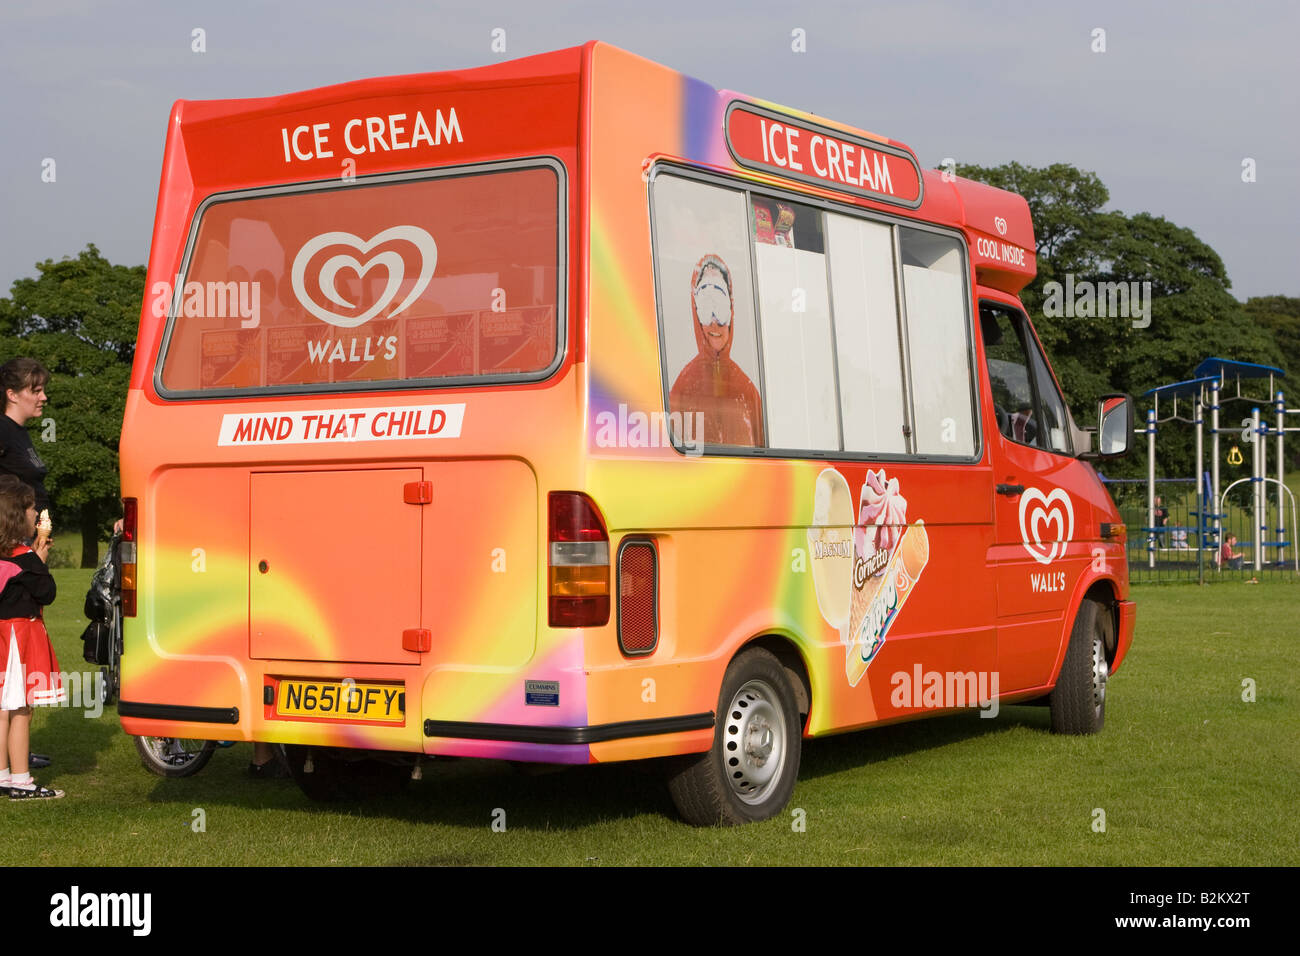 walls ice cream van